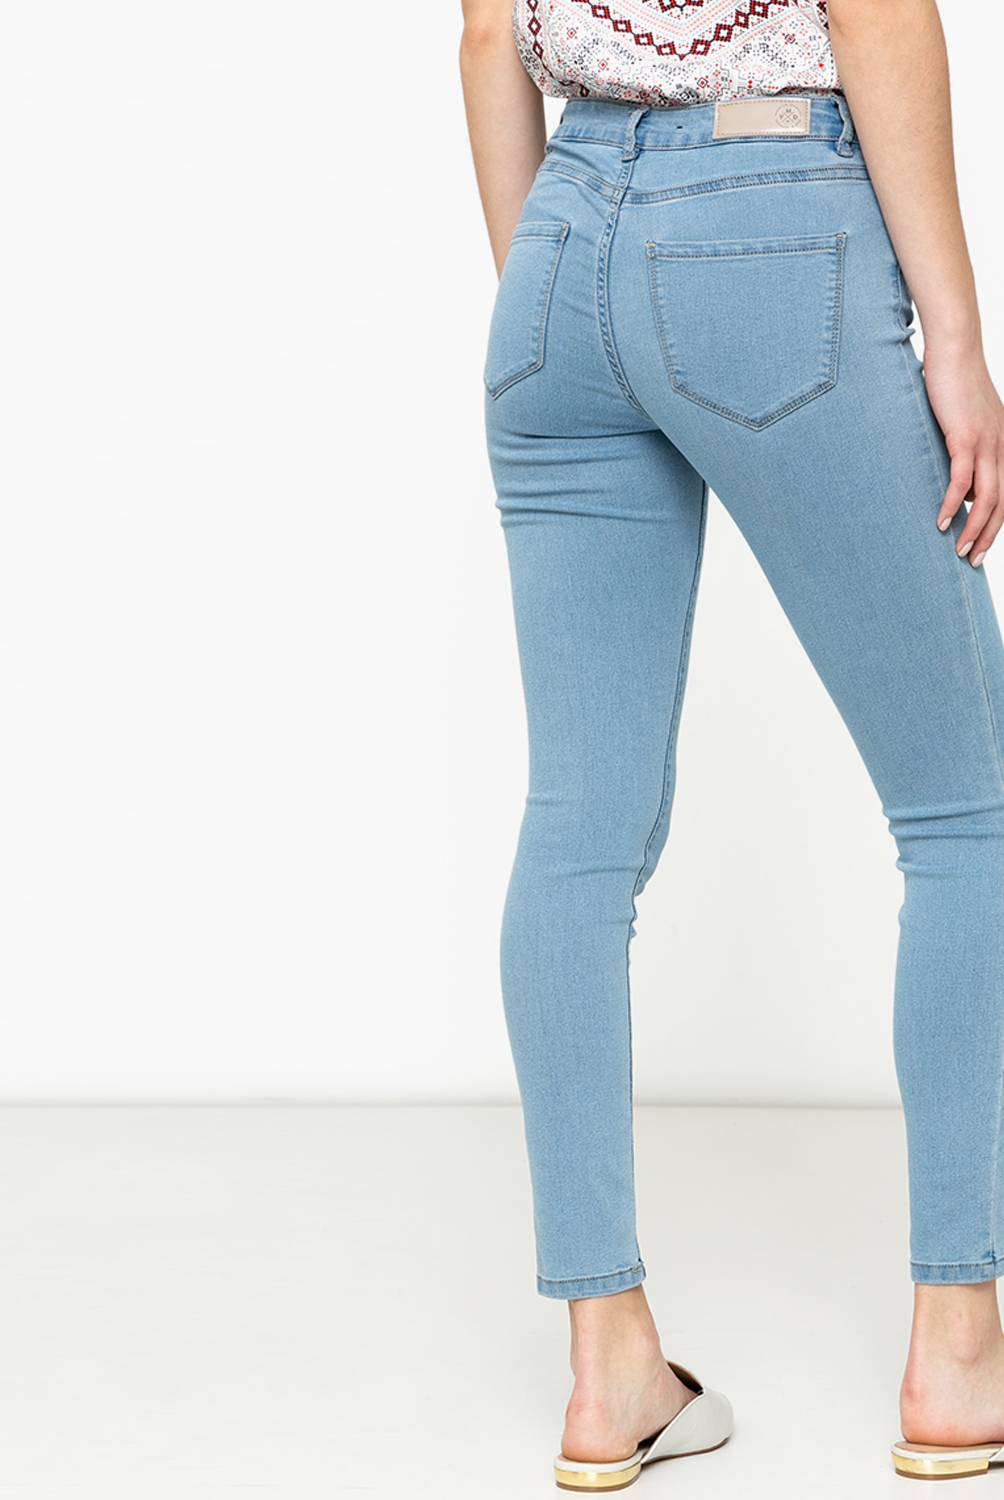 VERO MODA - Vero Moda Jeans Skinny Mujer Slim